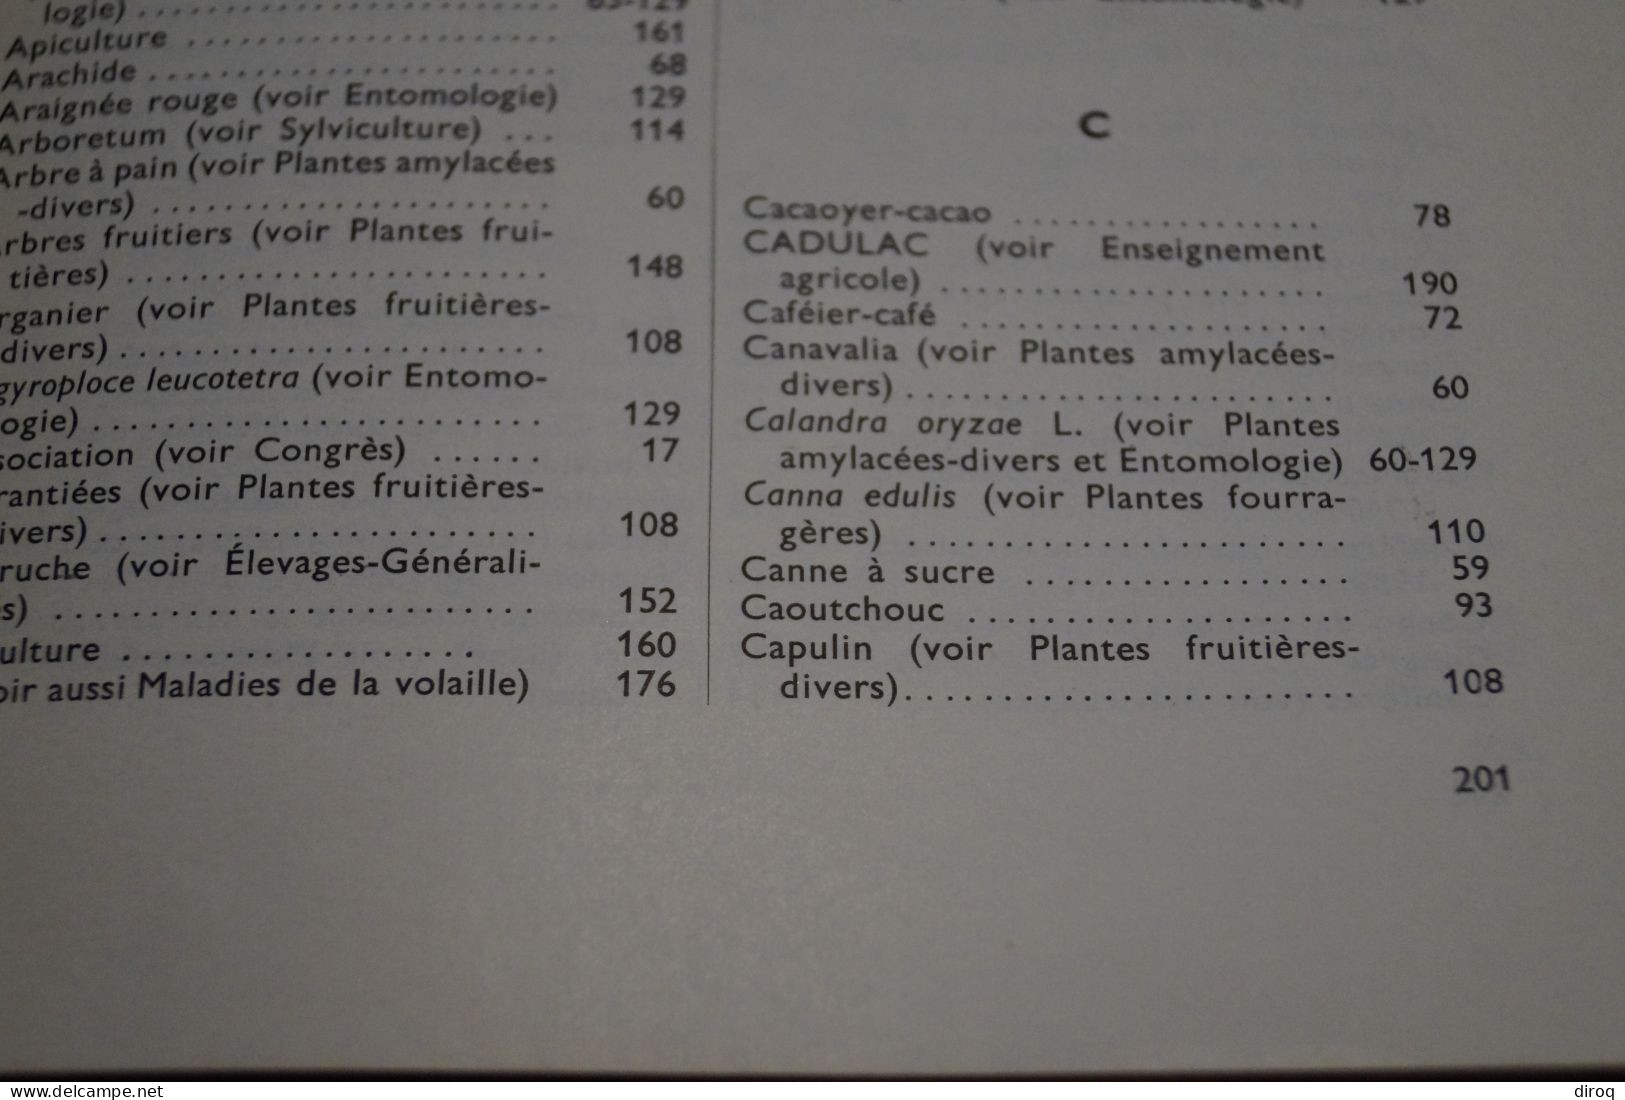 Congo Belge Et Ruanda-Urundi,219 Pages,Bulletin Agricole,24 Cm. Sur 16 Cm.1910-1959 - Autres & Non Classés